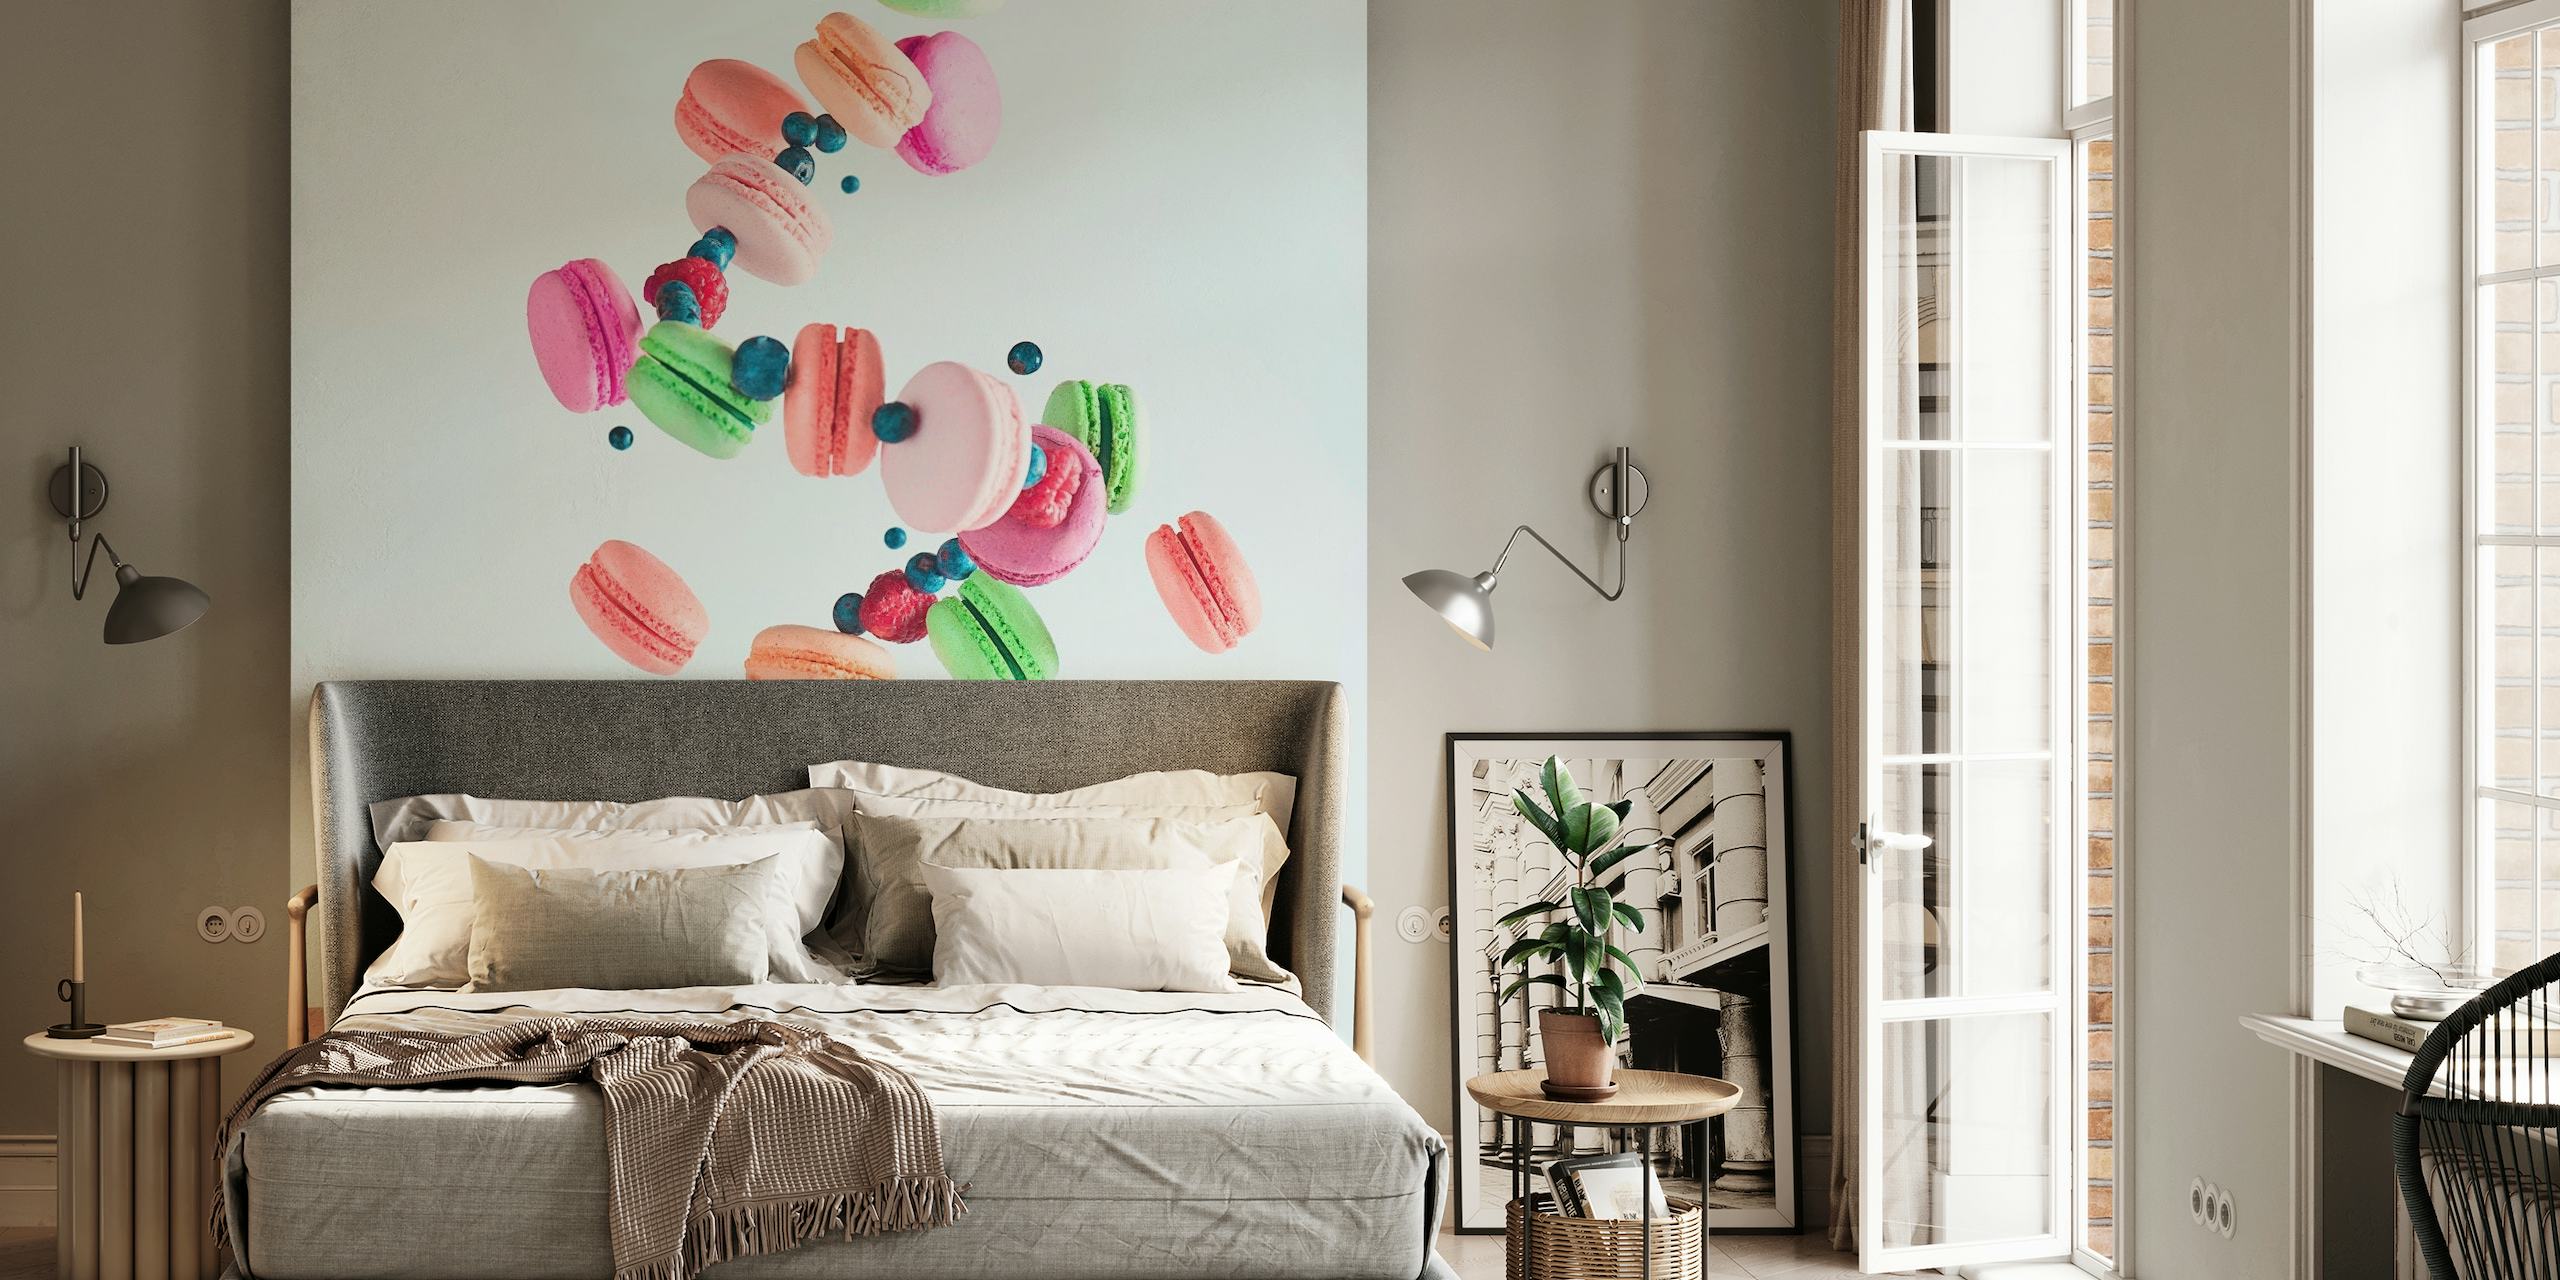 Fotomural vinílico de parede flutuante de macarons coloridos com uma mão